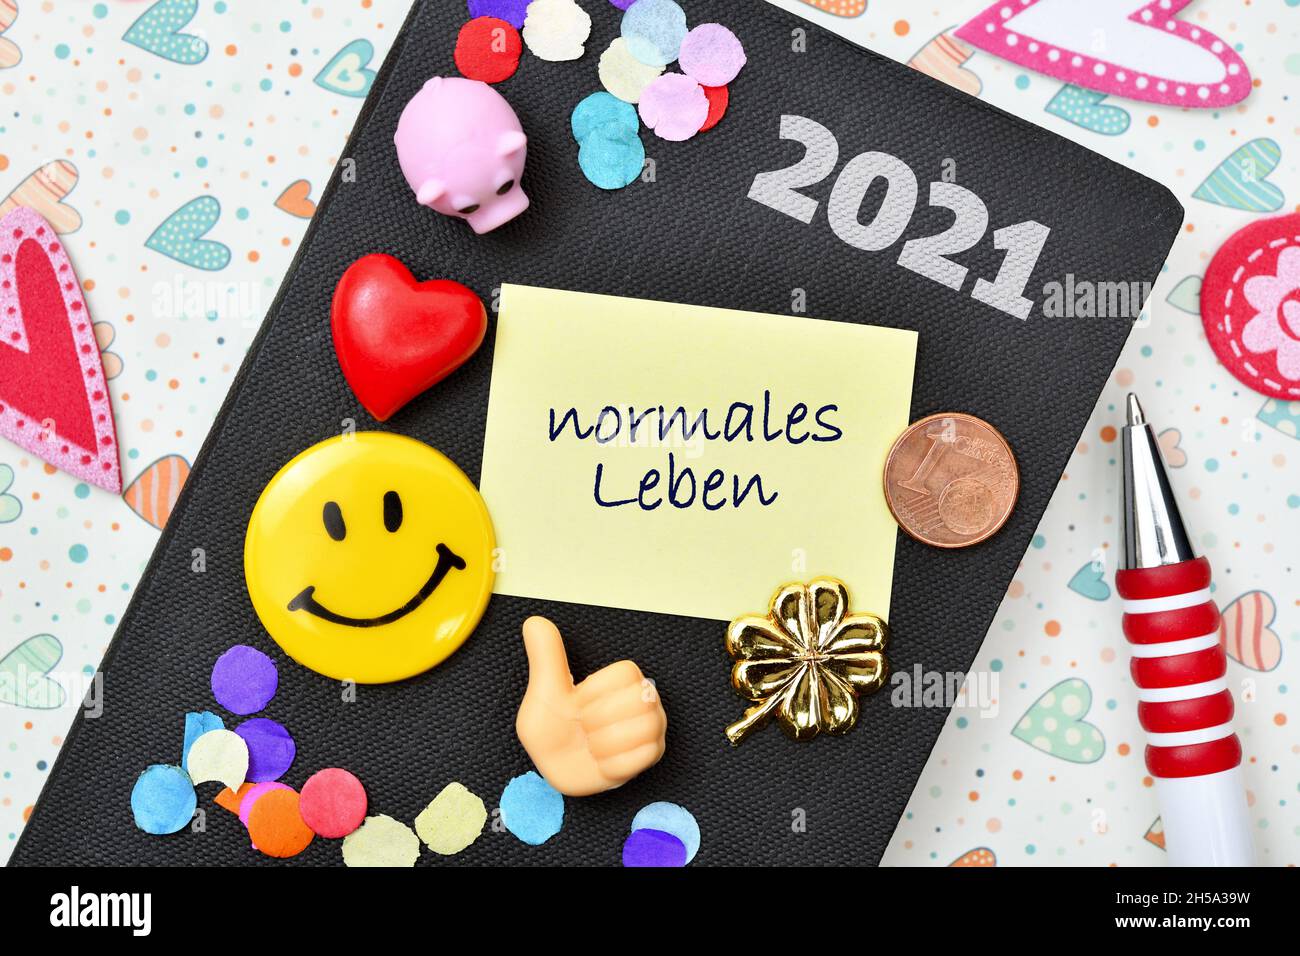 FOTOMONTAGE, Normales Leben als Wunsch für das neue Jahr 2021 nach dem Corona-Jahr 2020 Stock Photo